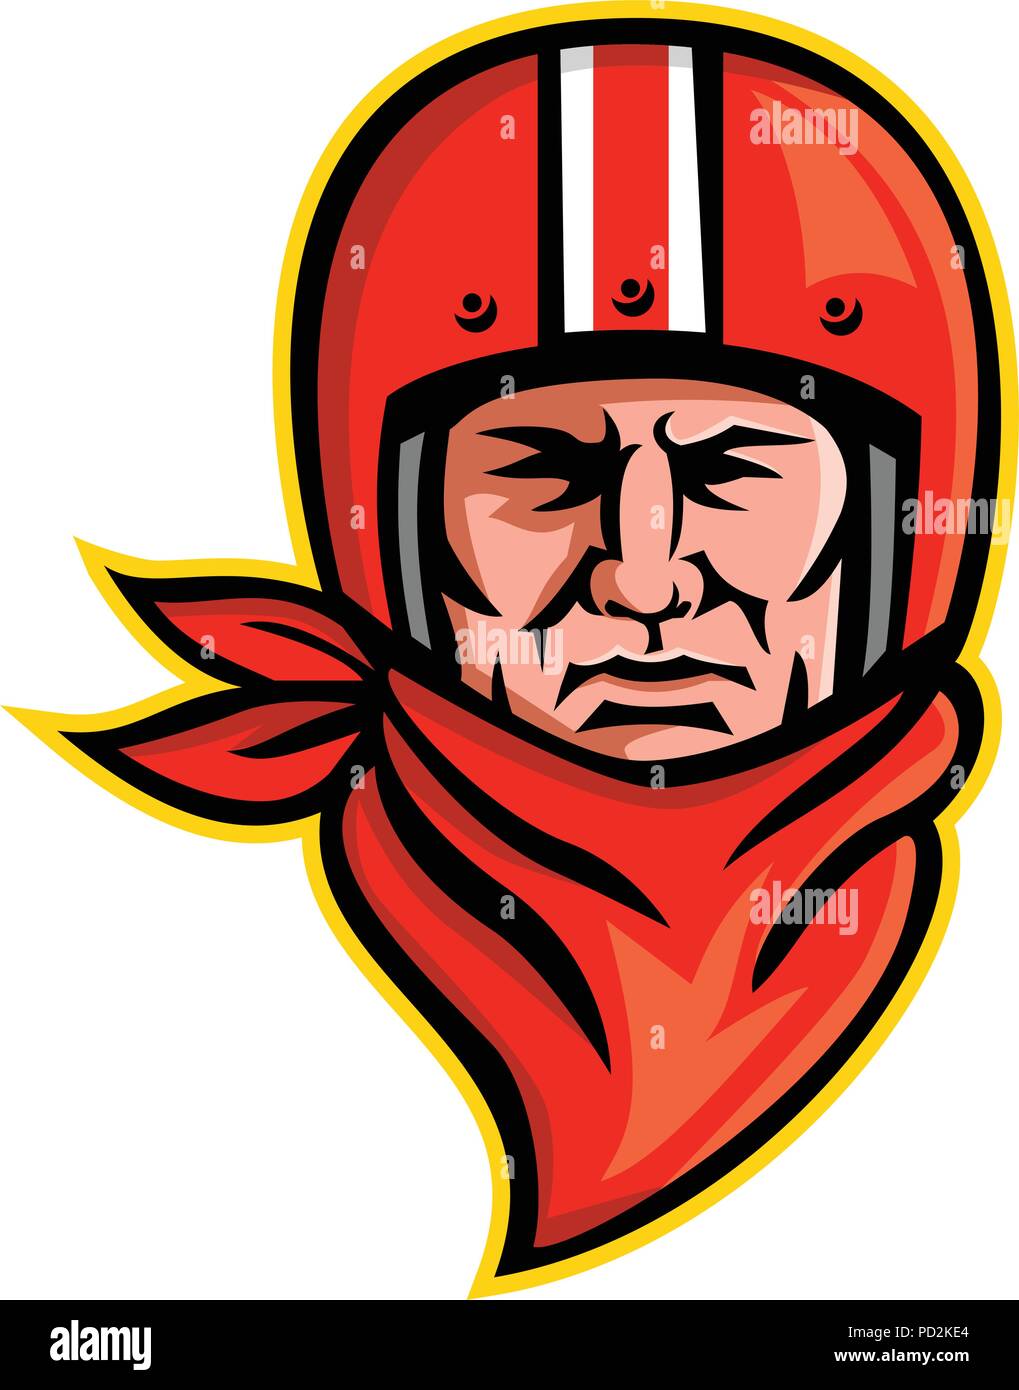 L'icône illustration mascotte de la tête d'un homme biker ou club de moto rider portant un casque vintage foulard ou bandana et vue de l'avant sur des Illustration de Vecteur